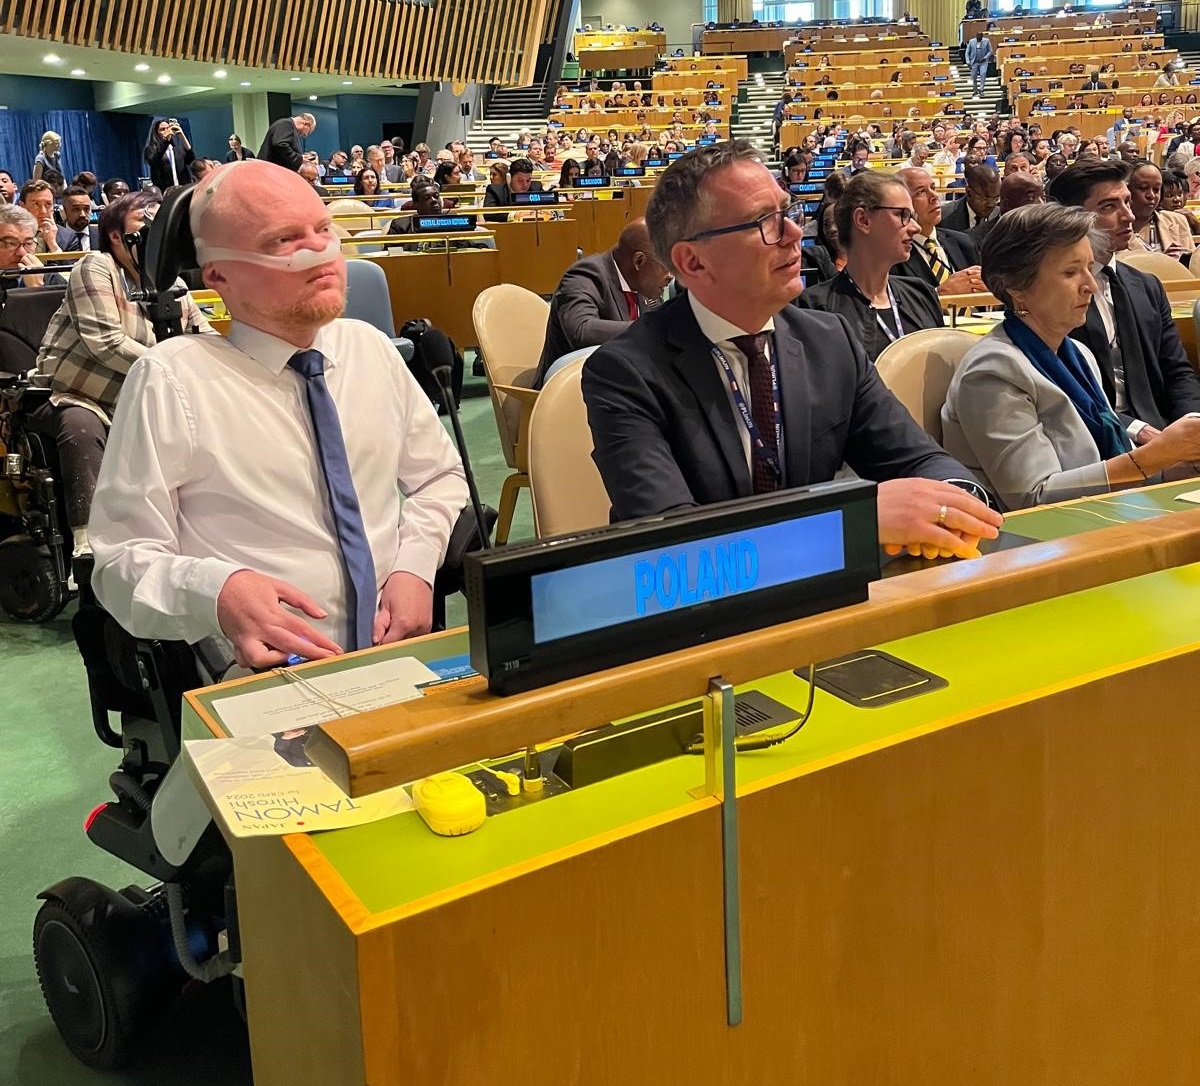 Wiceminister łukasz Krasoń i dyrektor Biura Penomocnika Krzysztof Kosiński są na Sali plenarnej w siedzibie ONZ wśród delegatów z całego świata. 